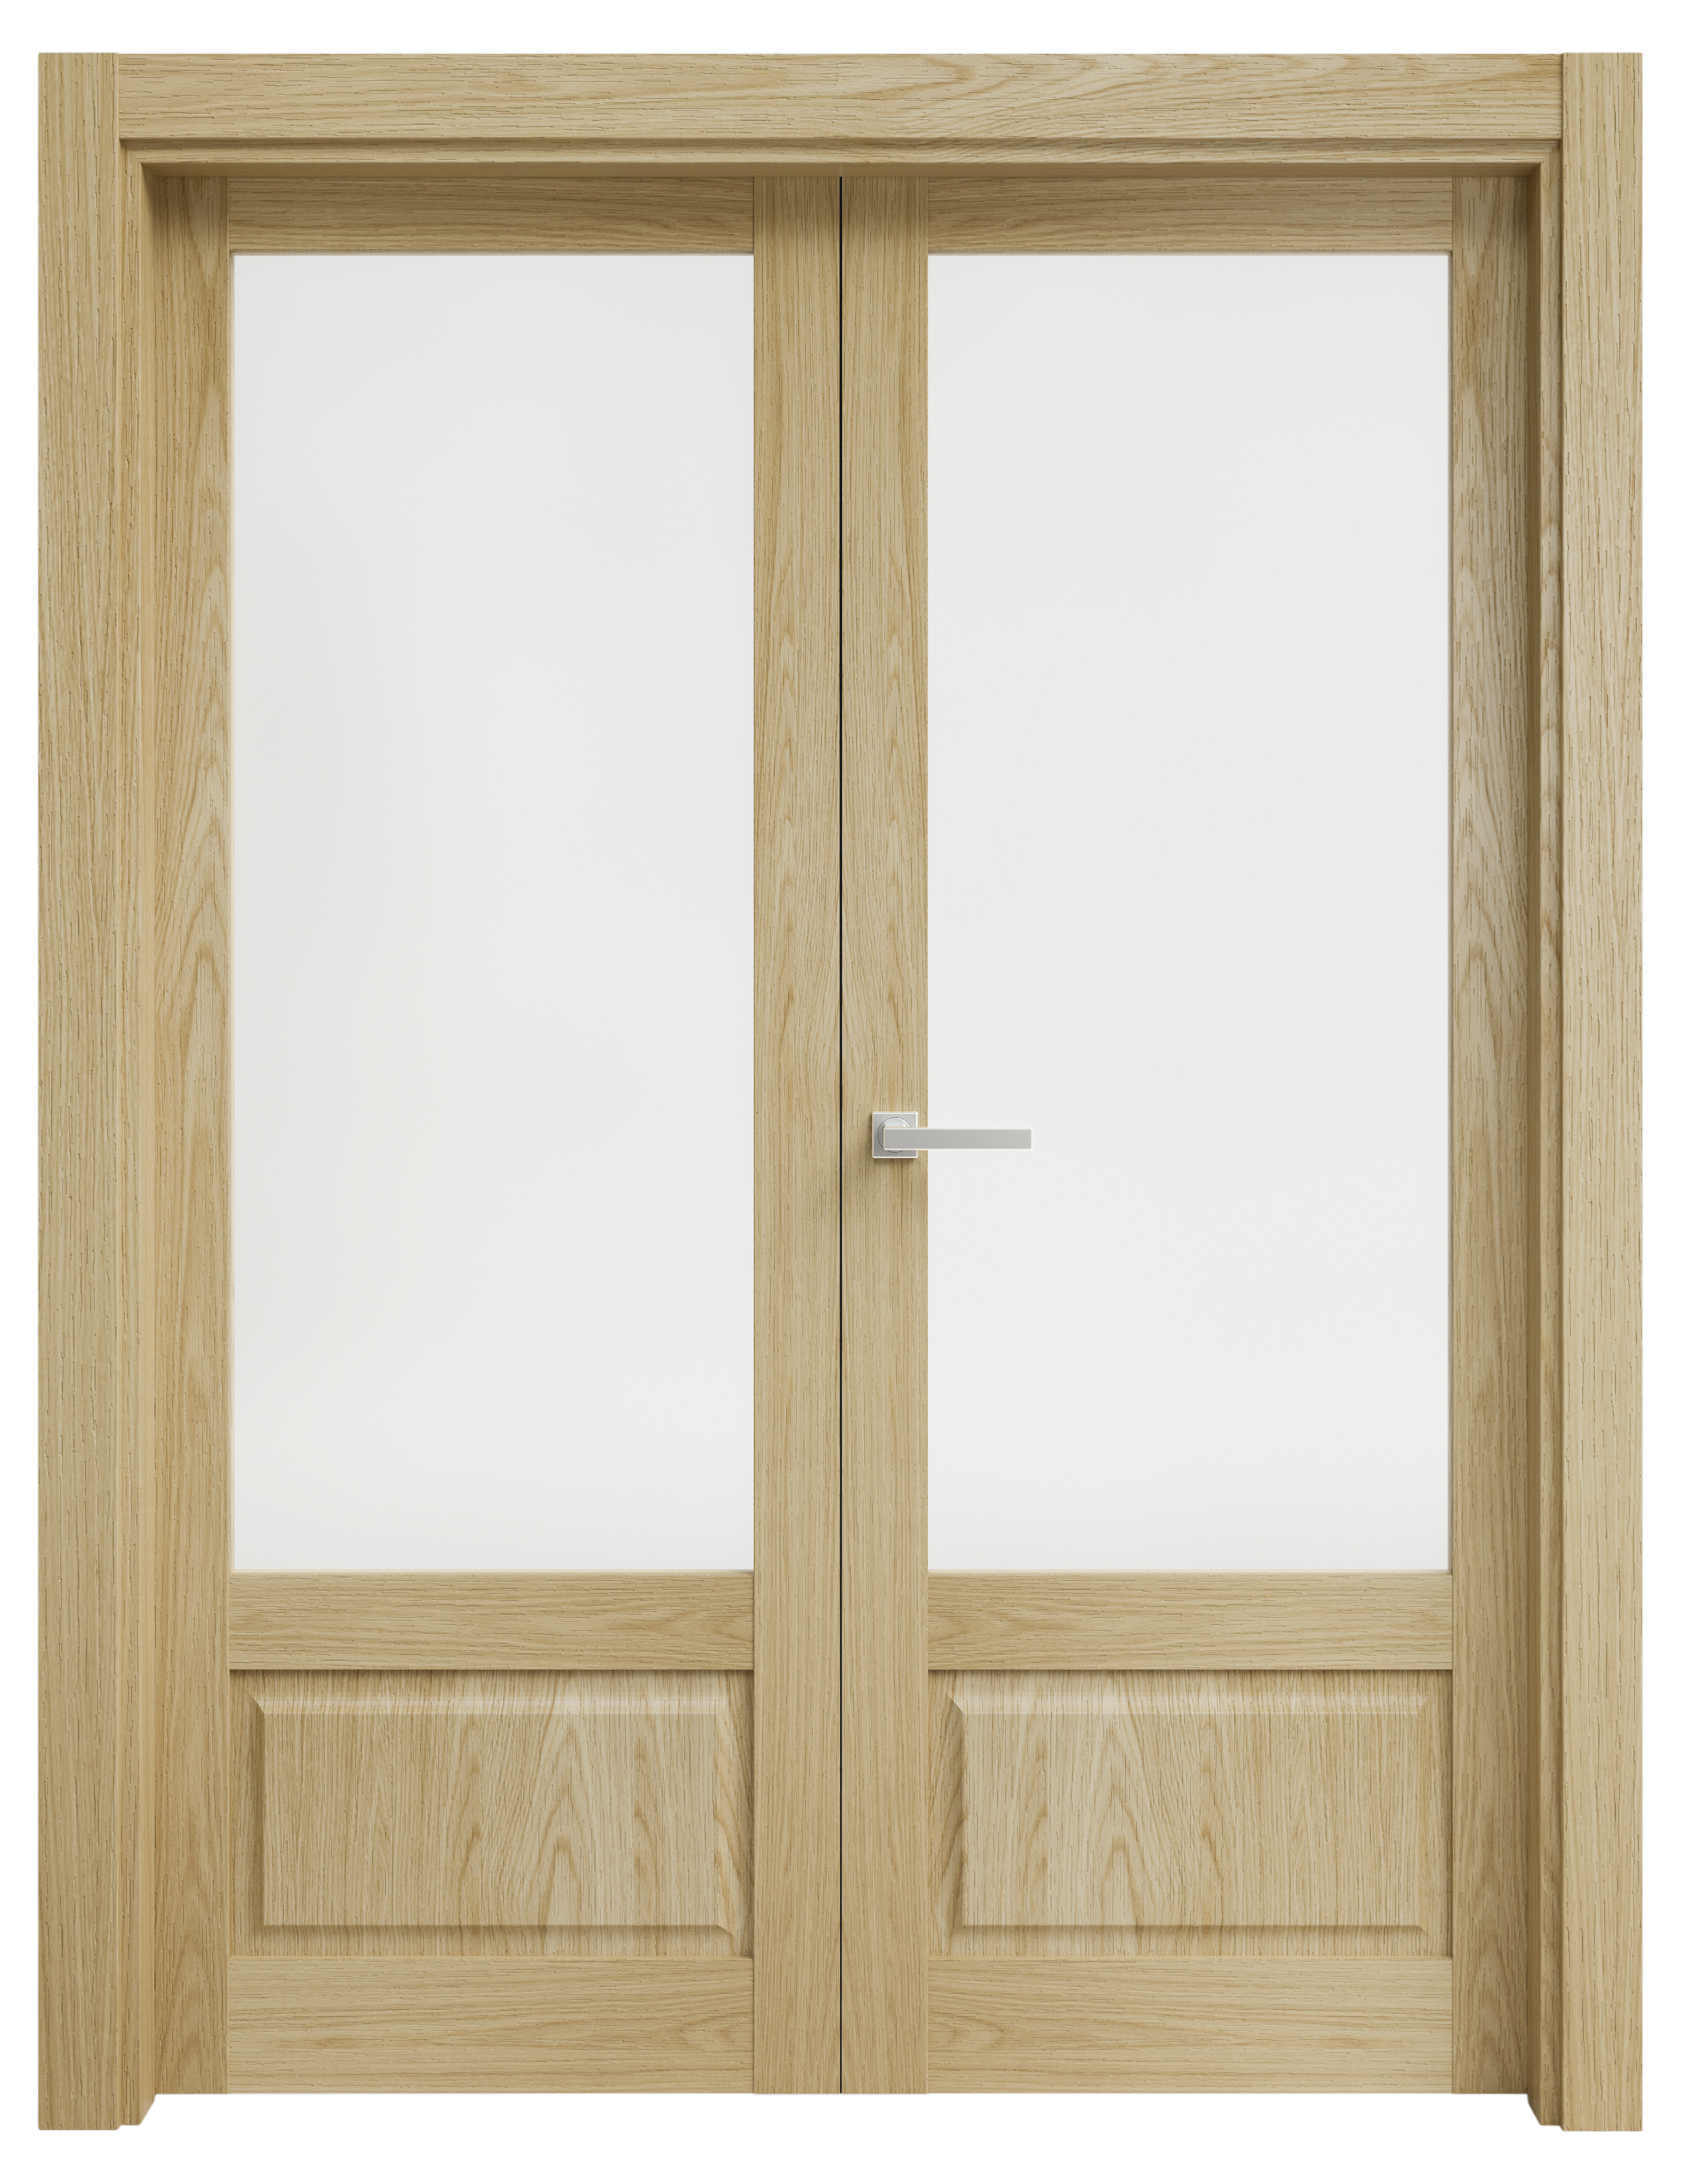 Puerta abatible sofia blanca line plus con cristal roble izquierda de 105 cm